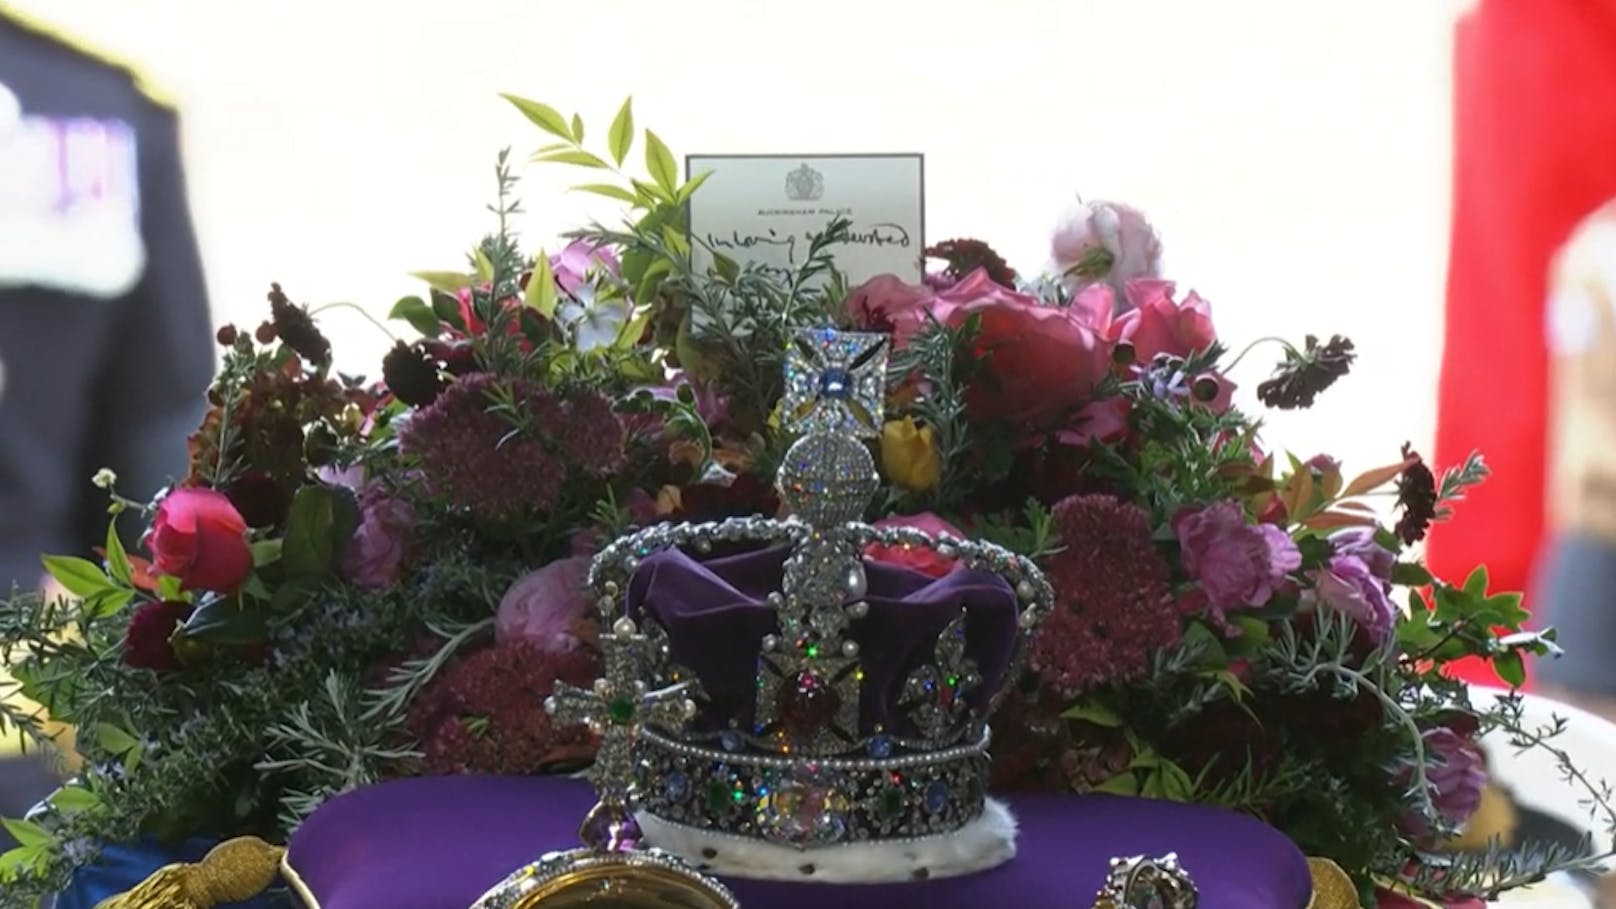 Der Blumenschmuck soll von König Charles III. selbst zusammengestellt worden sein. Es sind die liebsten Gartenblumen seiner Mutter. Die Nachricht ist von dem König persönlich geschrieben worden: "In liebender und wertschätzender Erinnerung".